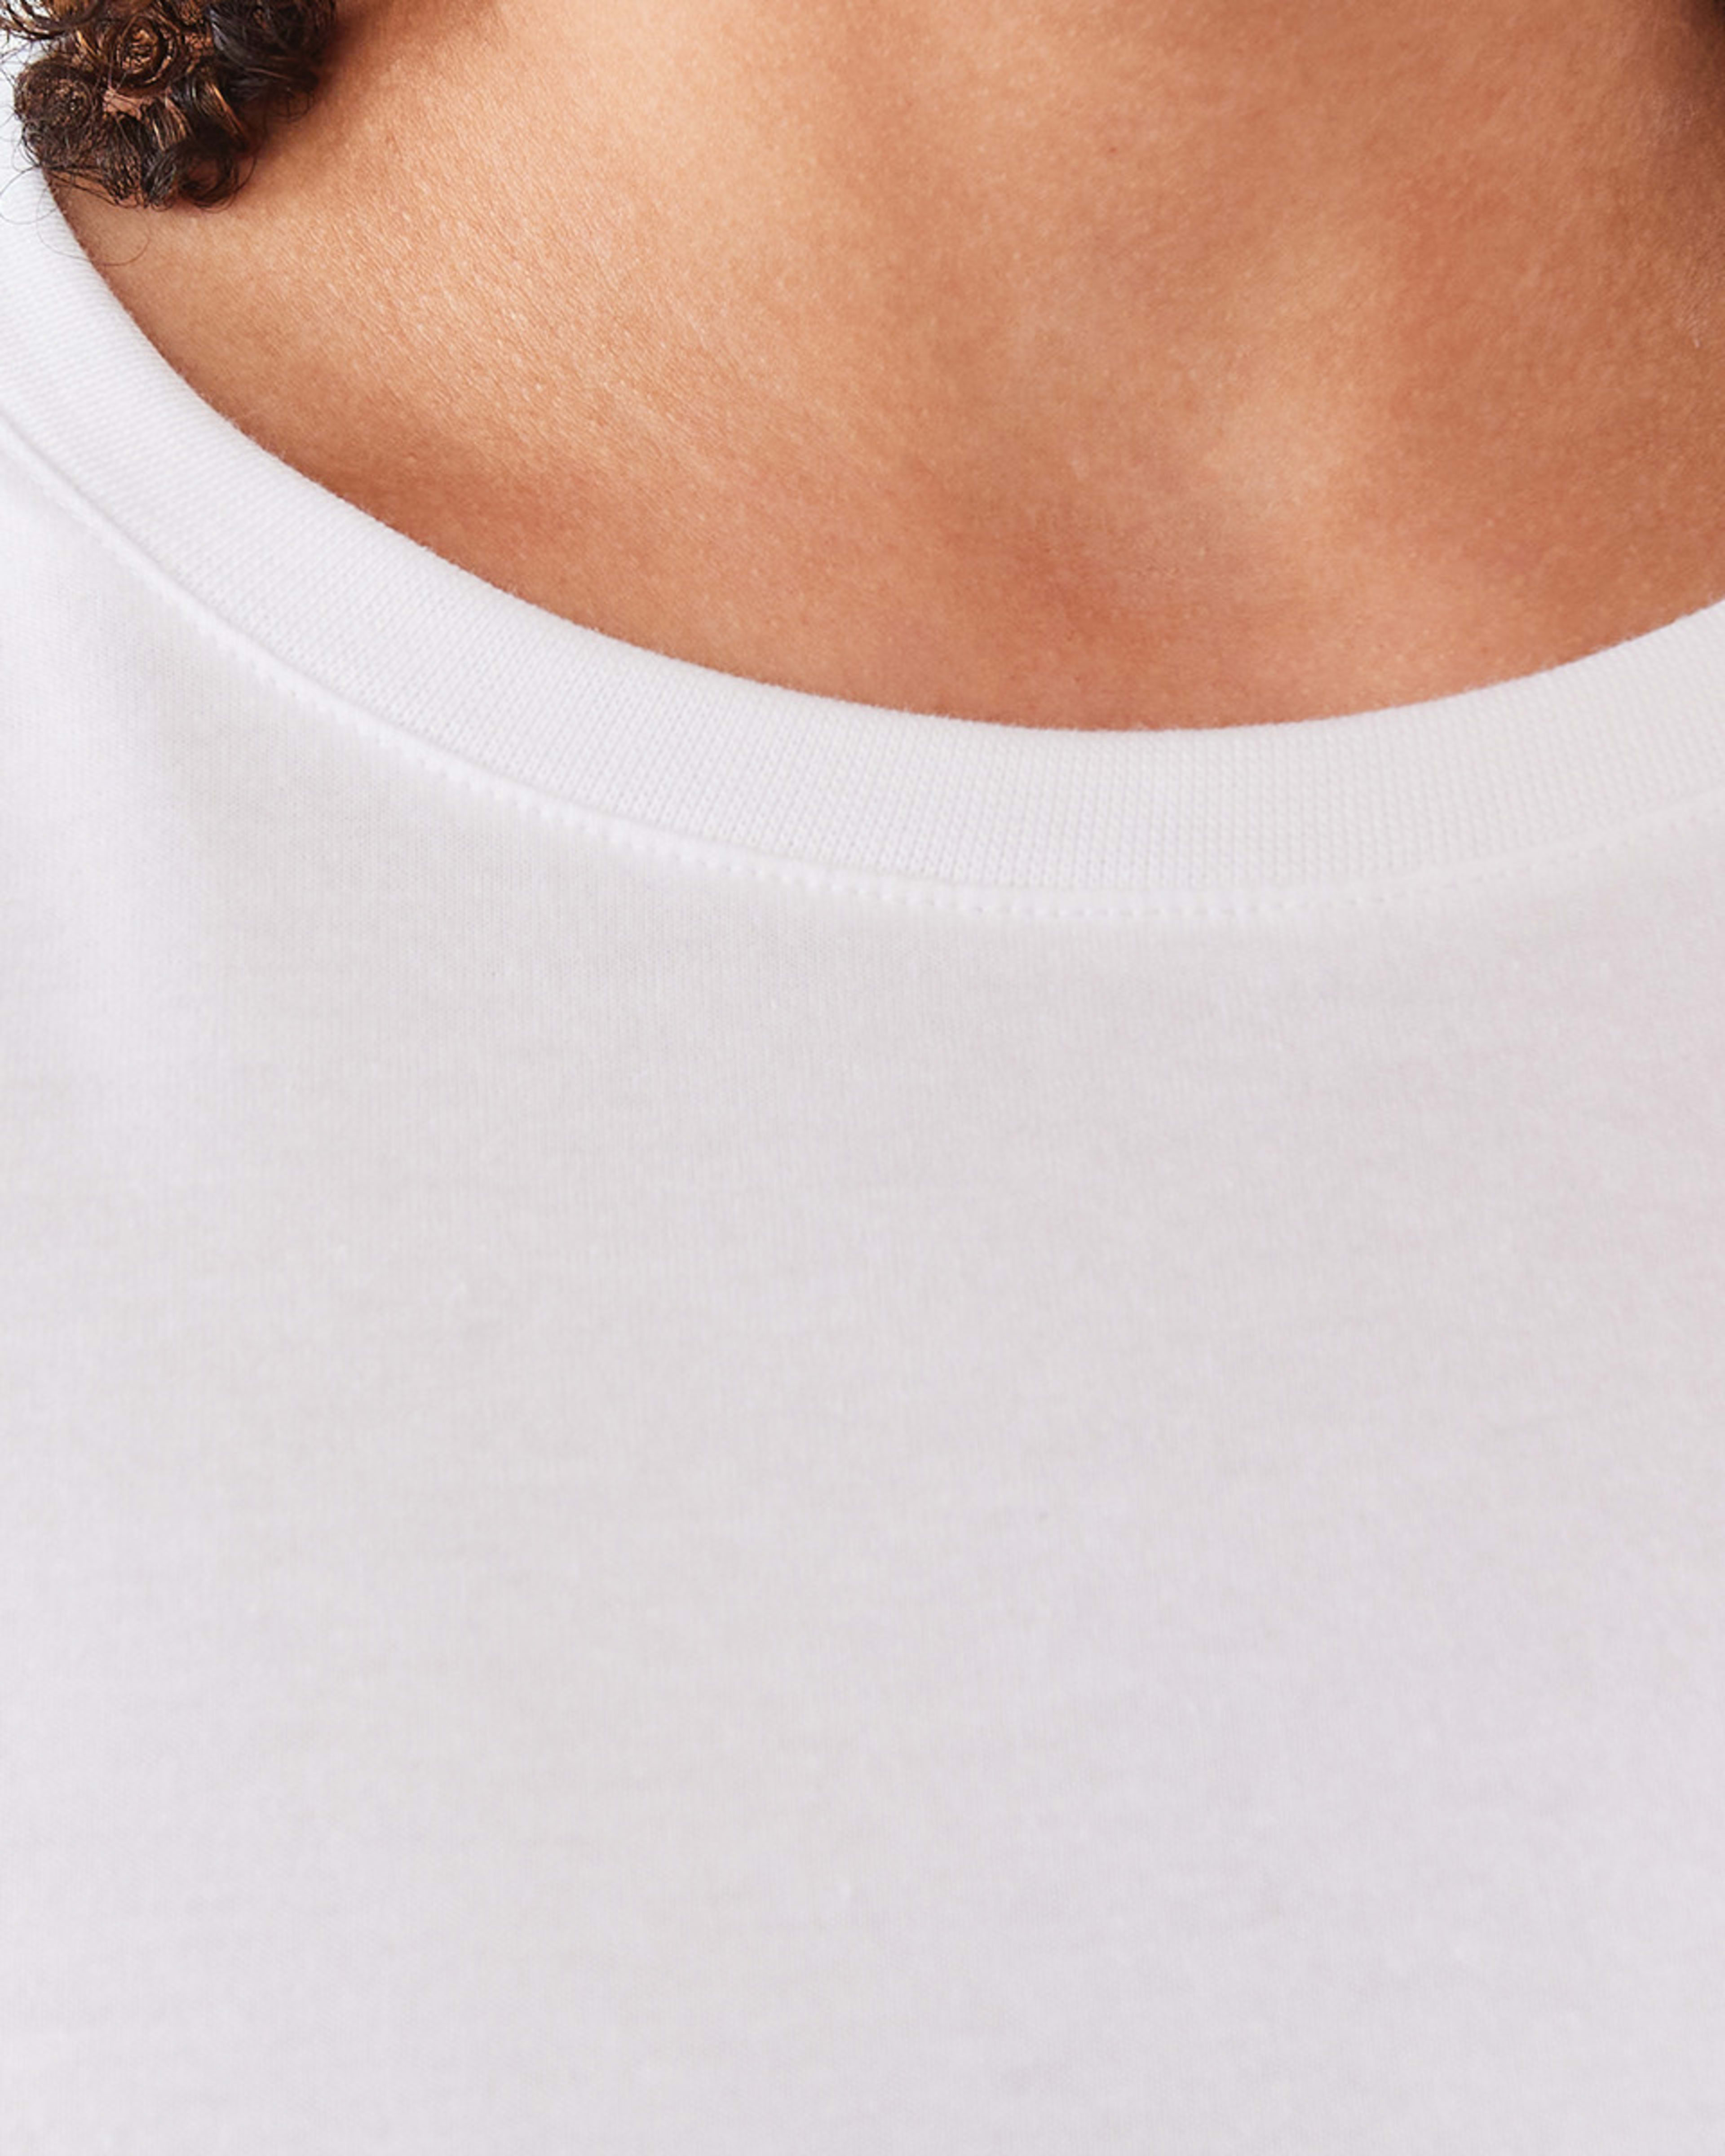 Long Sleeve Cotton T-shirt - Kmart NZ